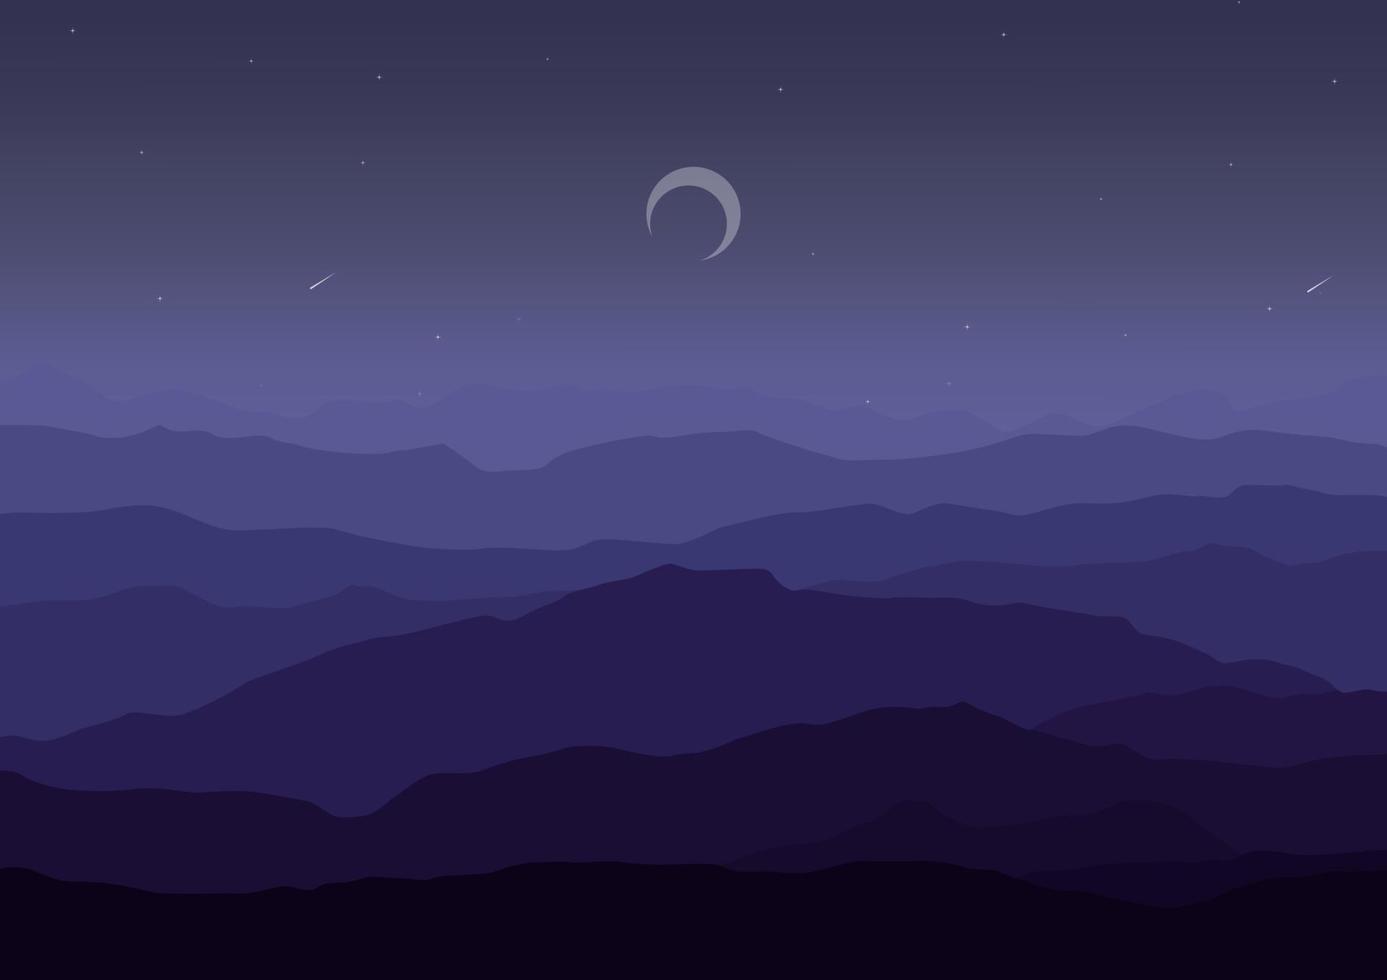 Nacht Berge Landschaft Vektor Design Illustration